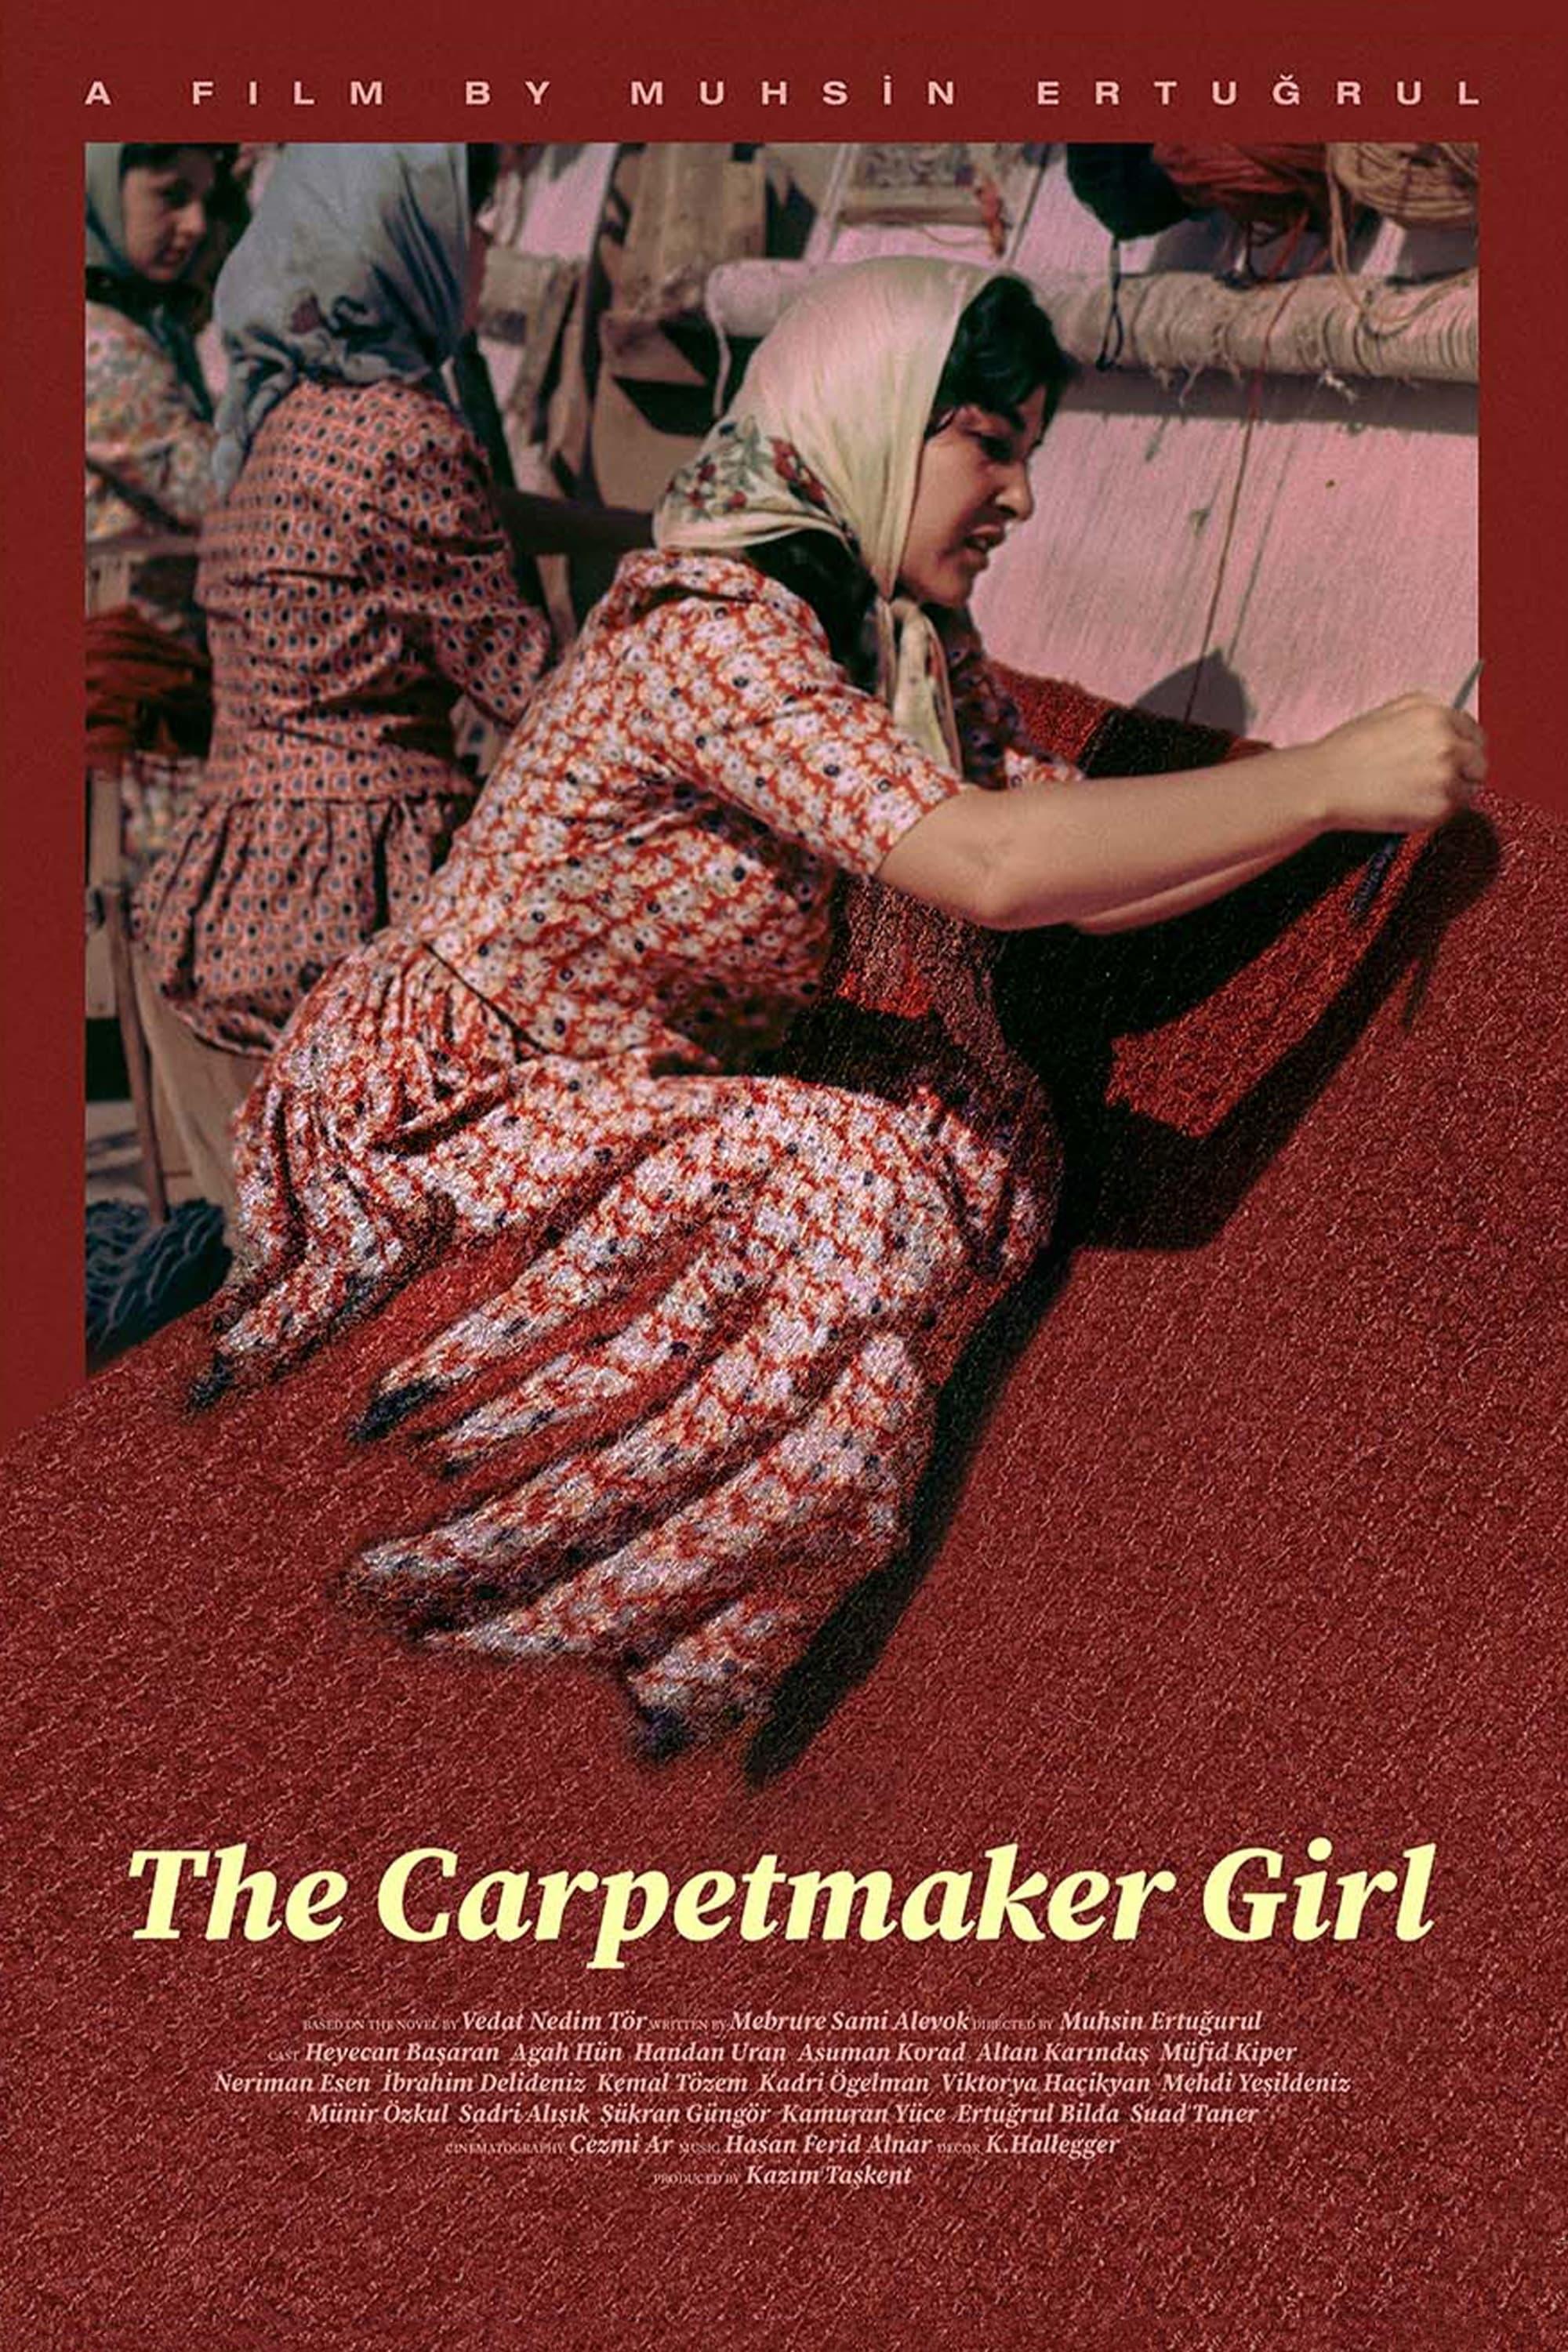 The Carpetmaker Girl poster